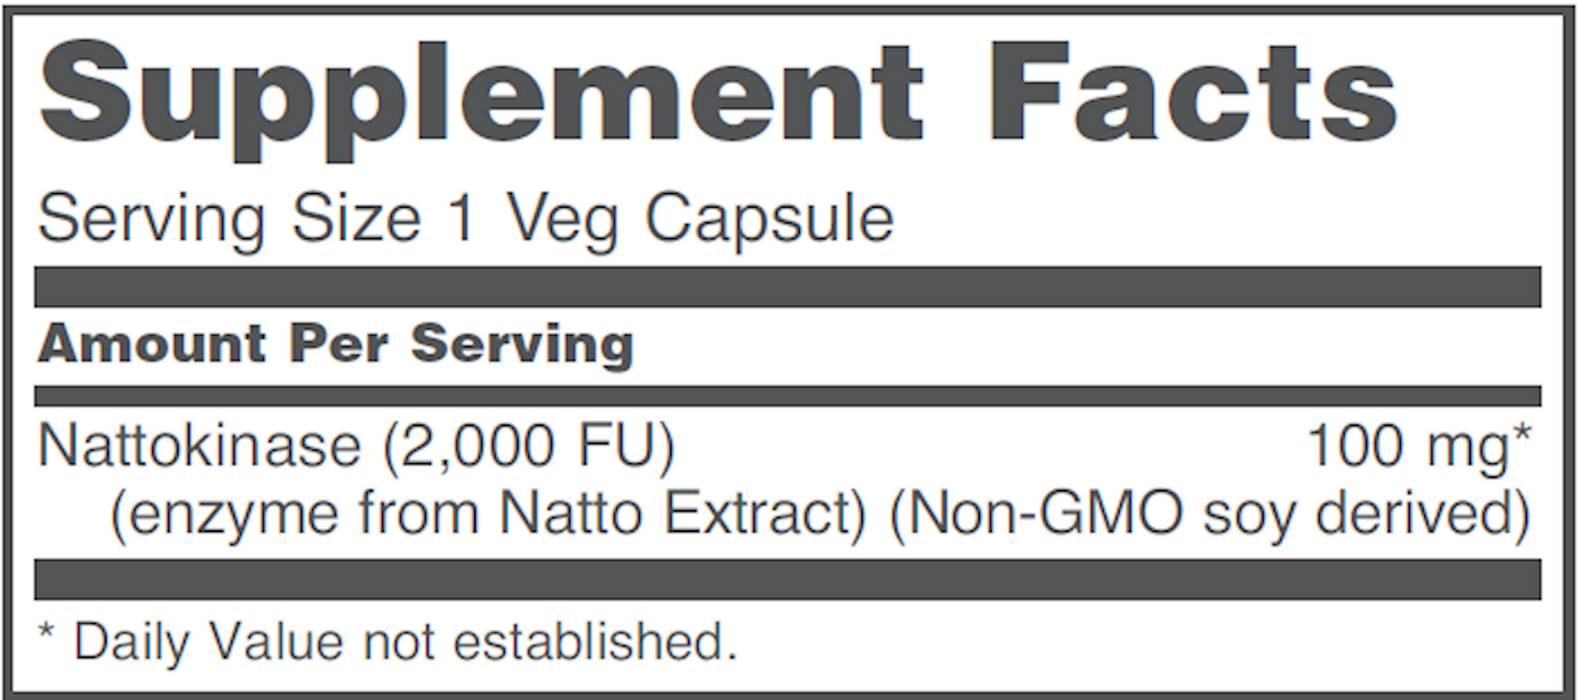 Protocol For Life Balance Nattokinase 100 mg 60 vegcaps